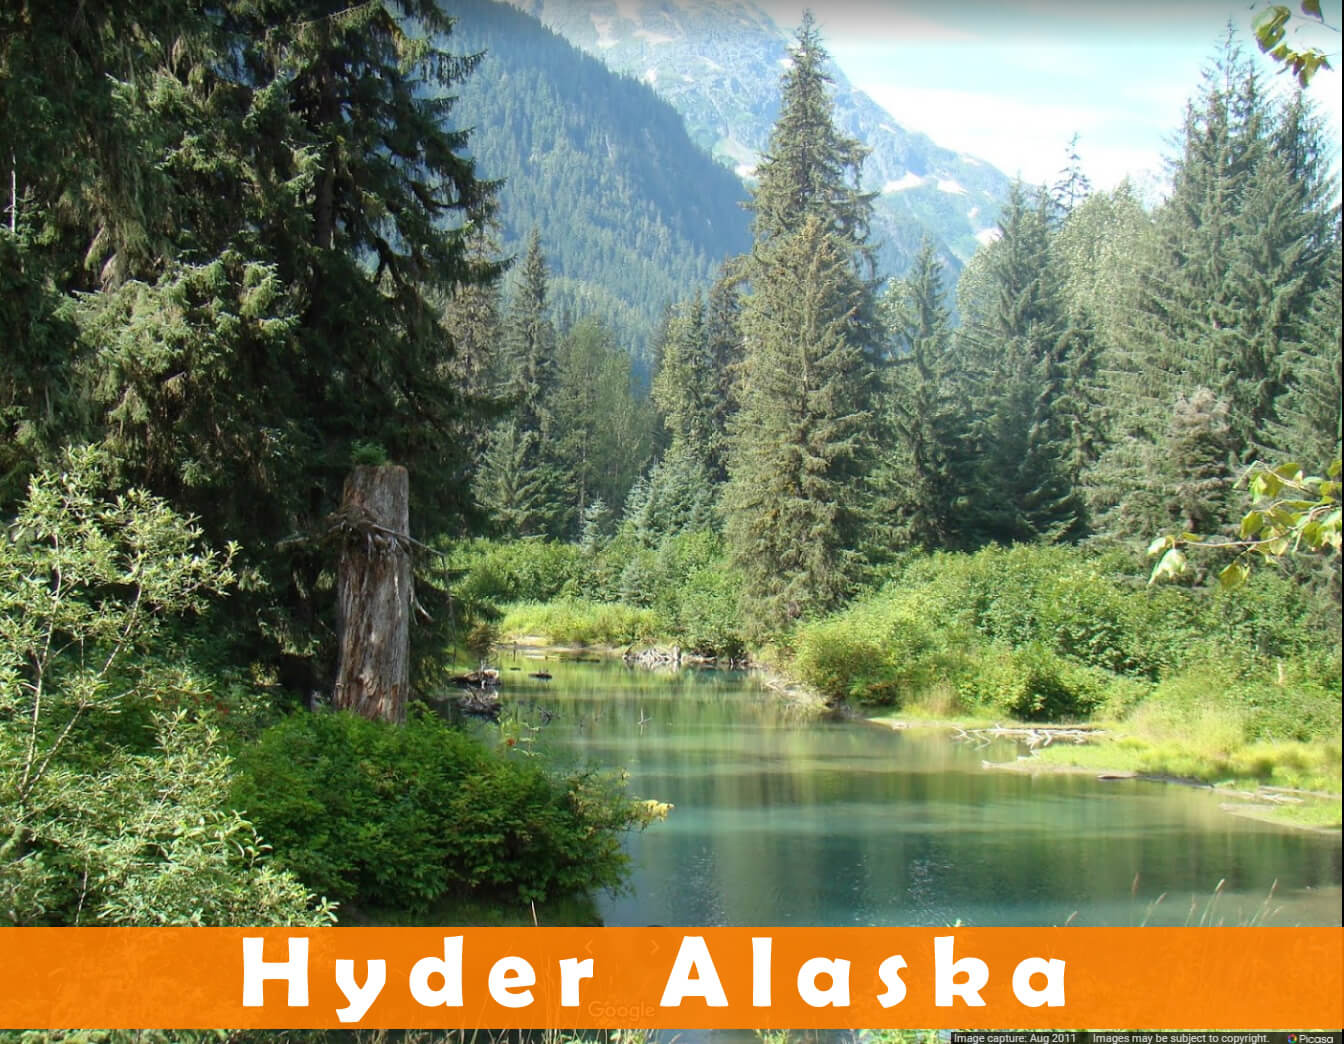 Hydaburg Alaska